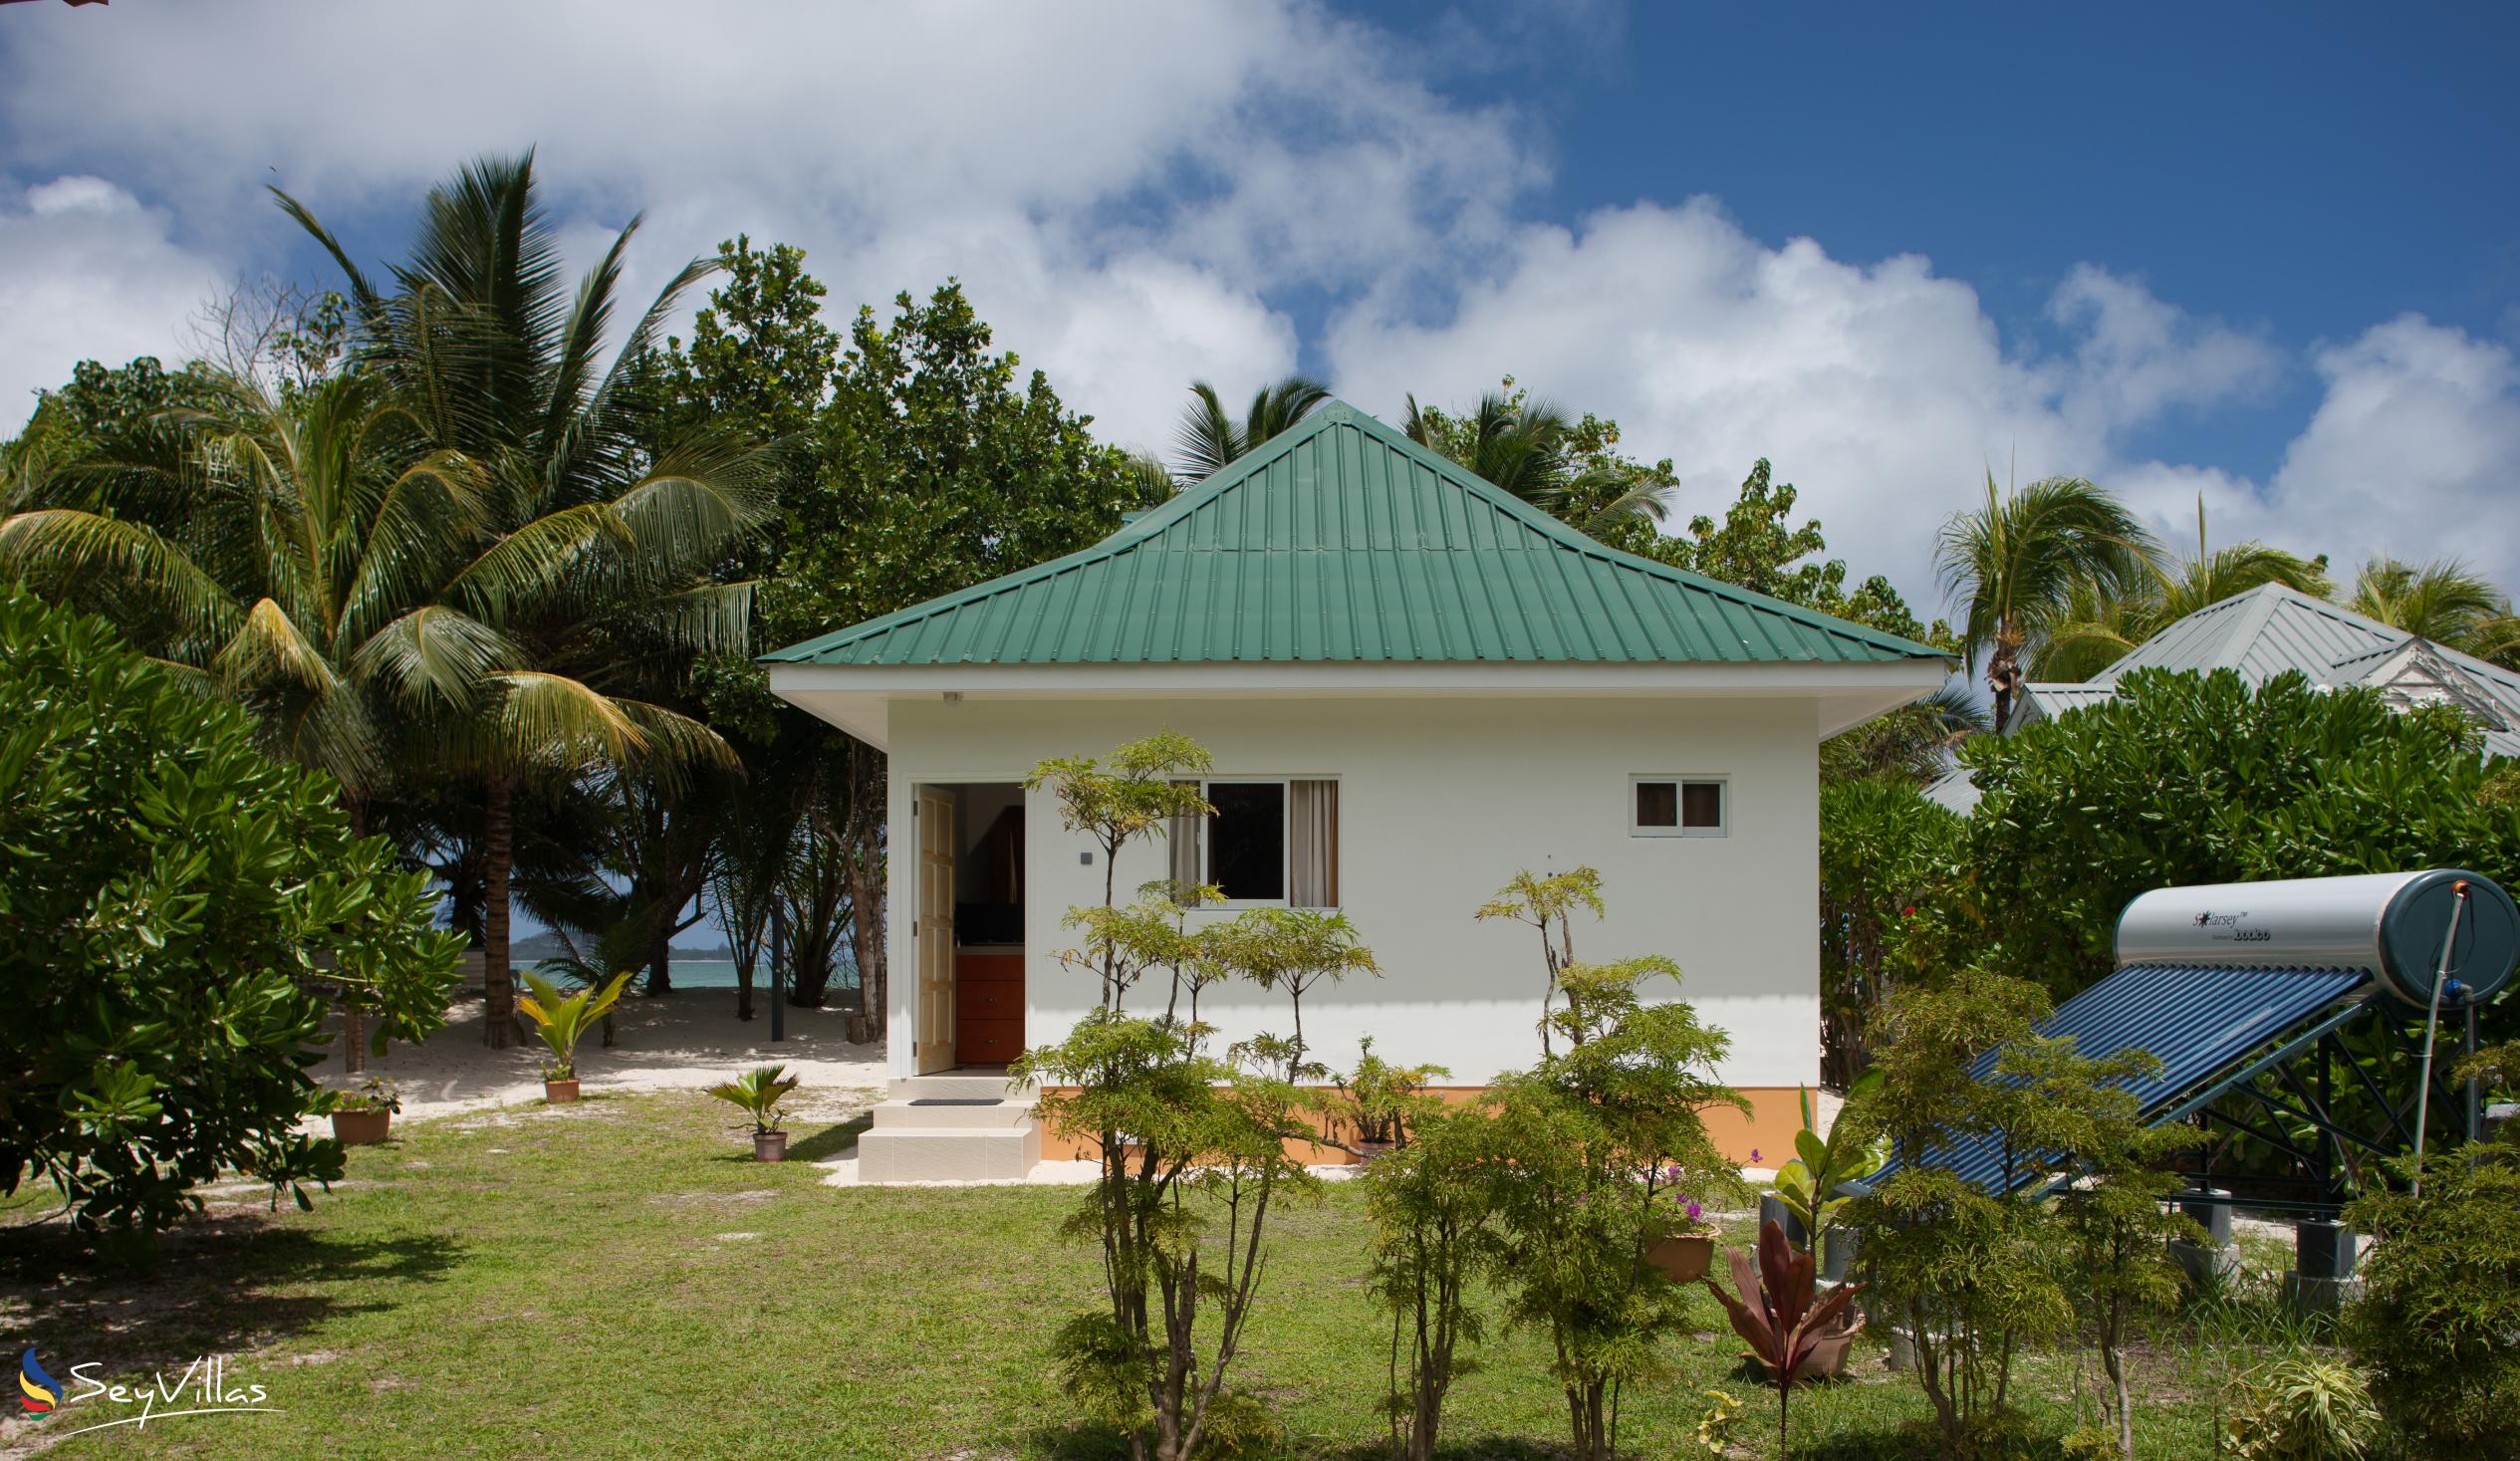 Foto 5: Villa Admiral - Aussenbereich - Praslin (Seychellen)